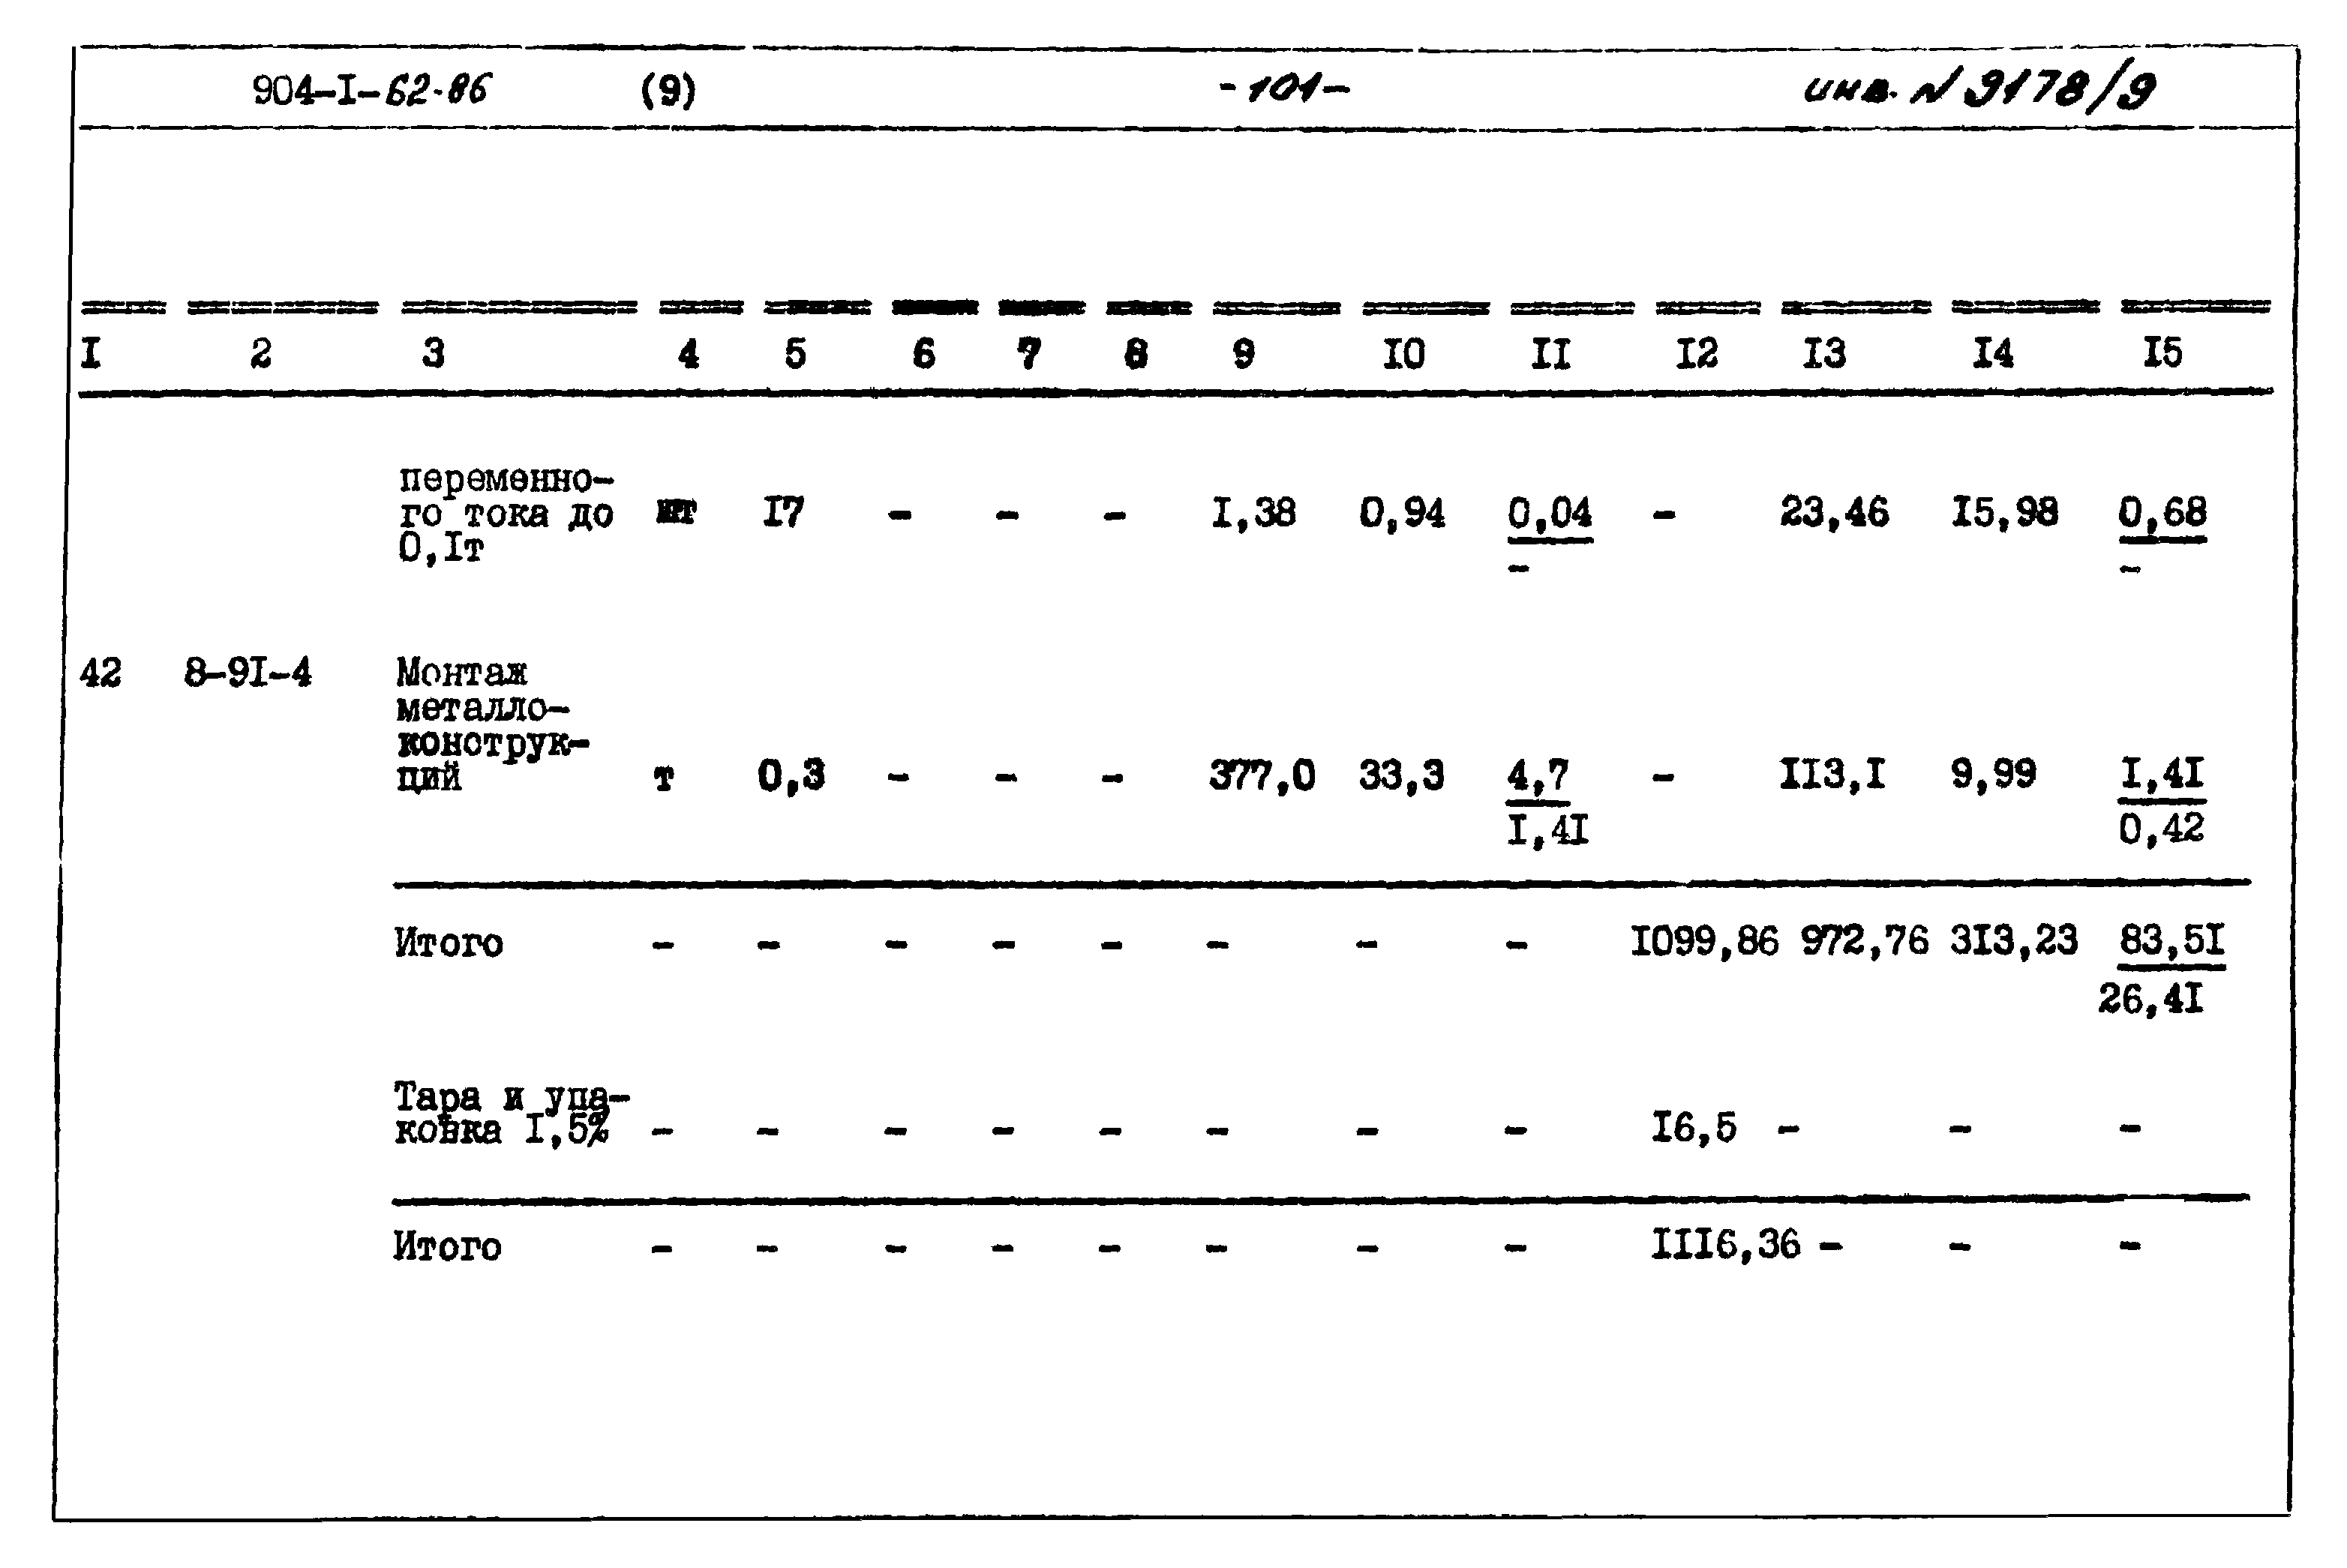 Типовой проект 904-1-62.86